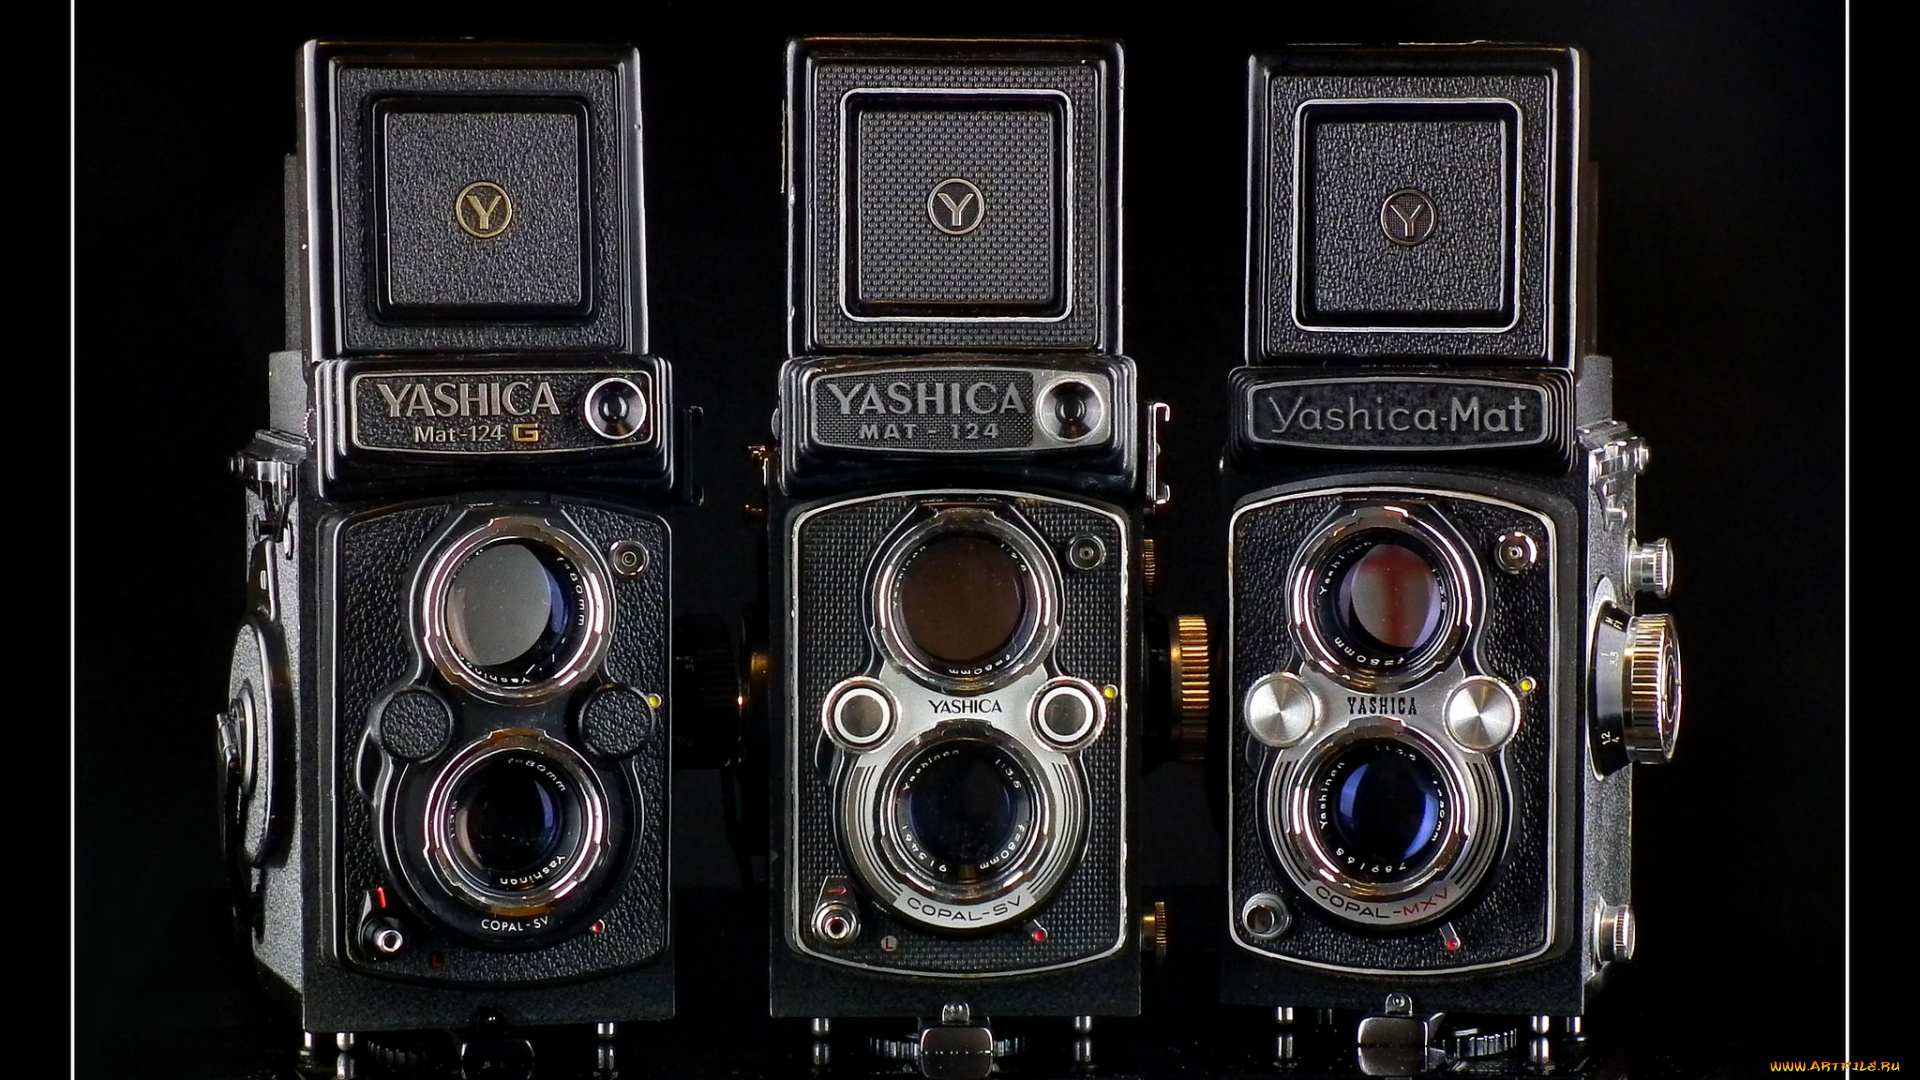 yashica, mat, family, бренды, бренды, фотоаппаратов, , разное, фотокамера